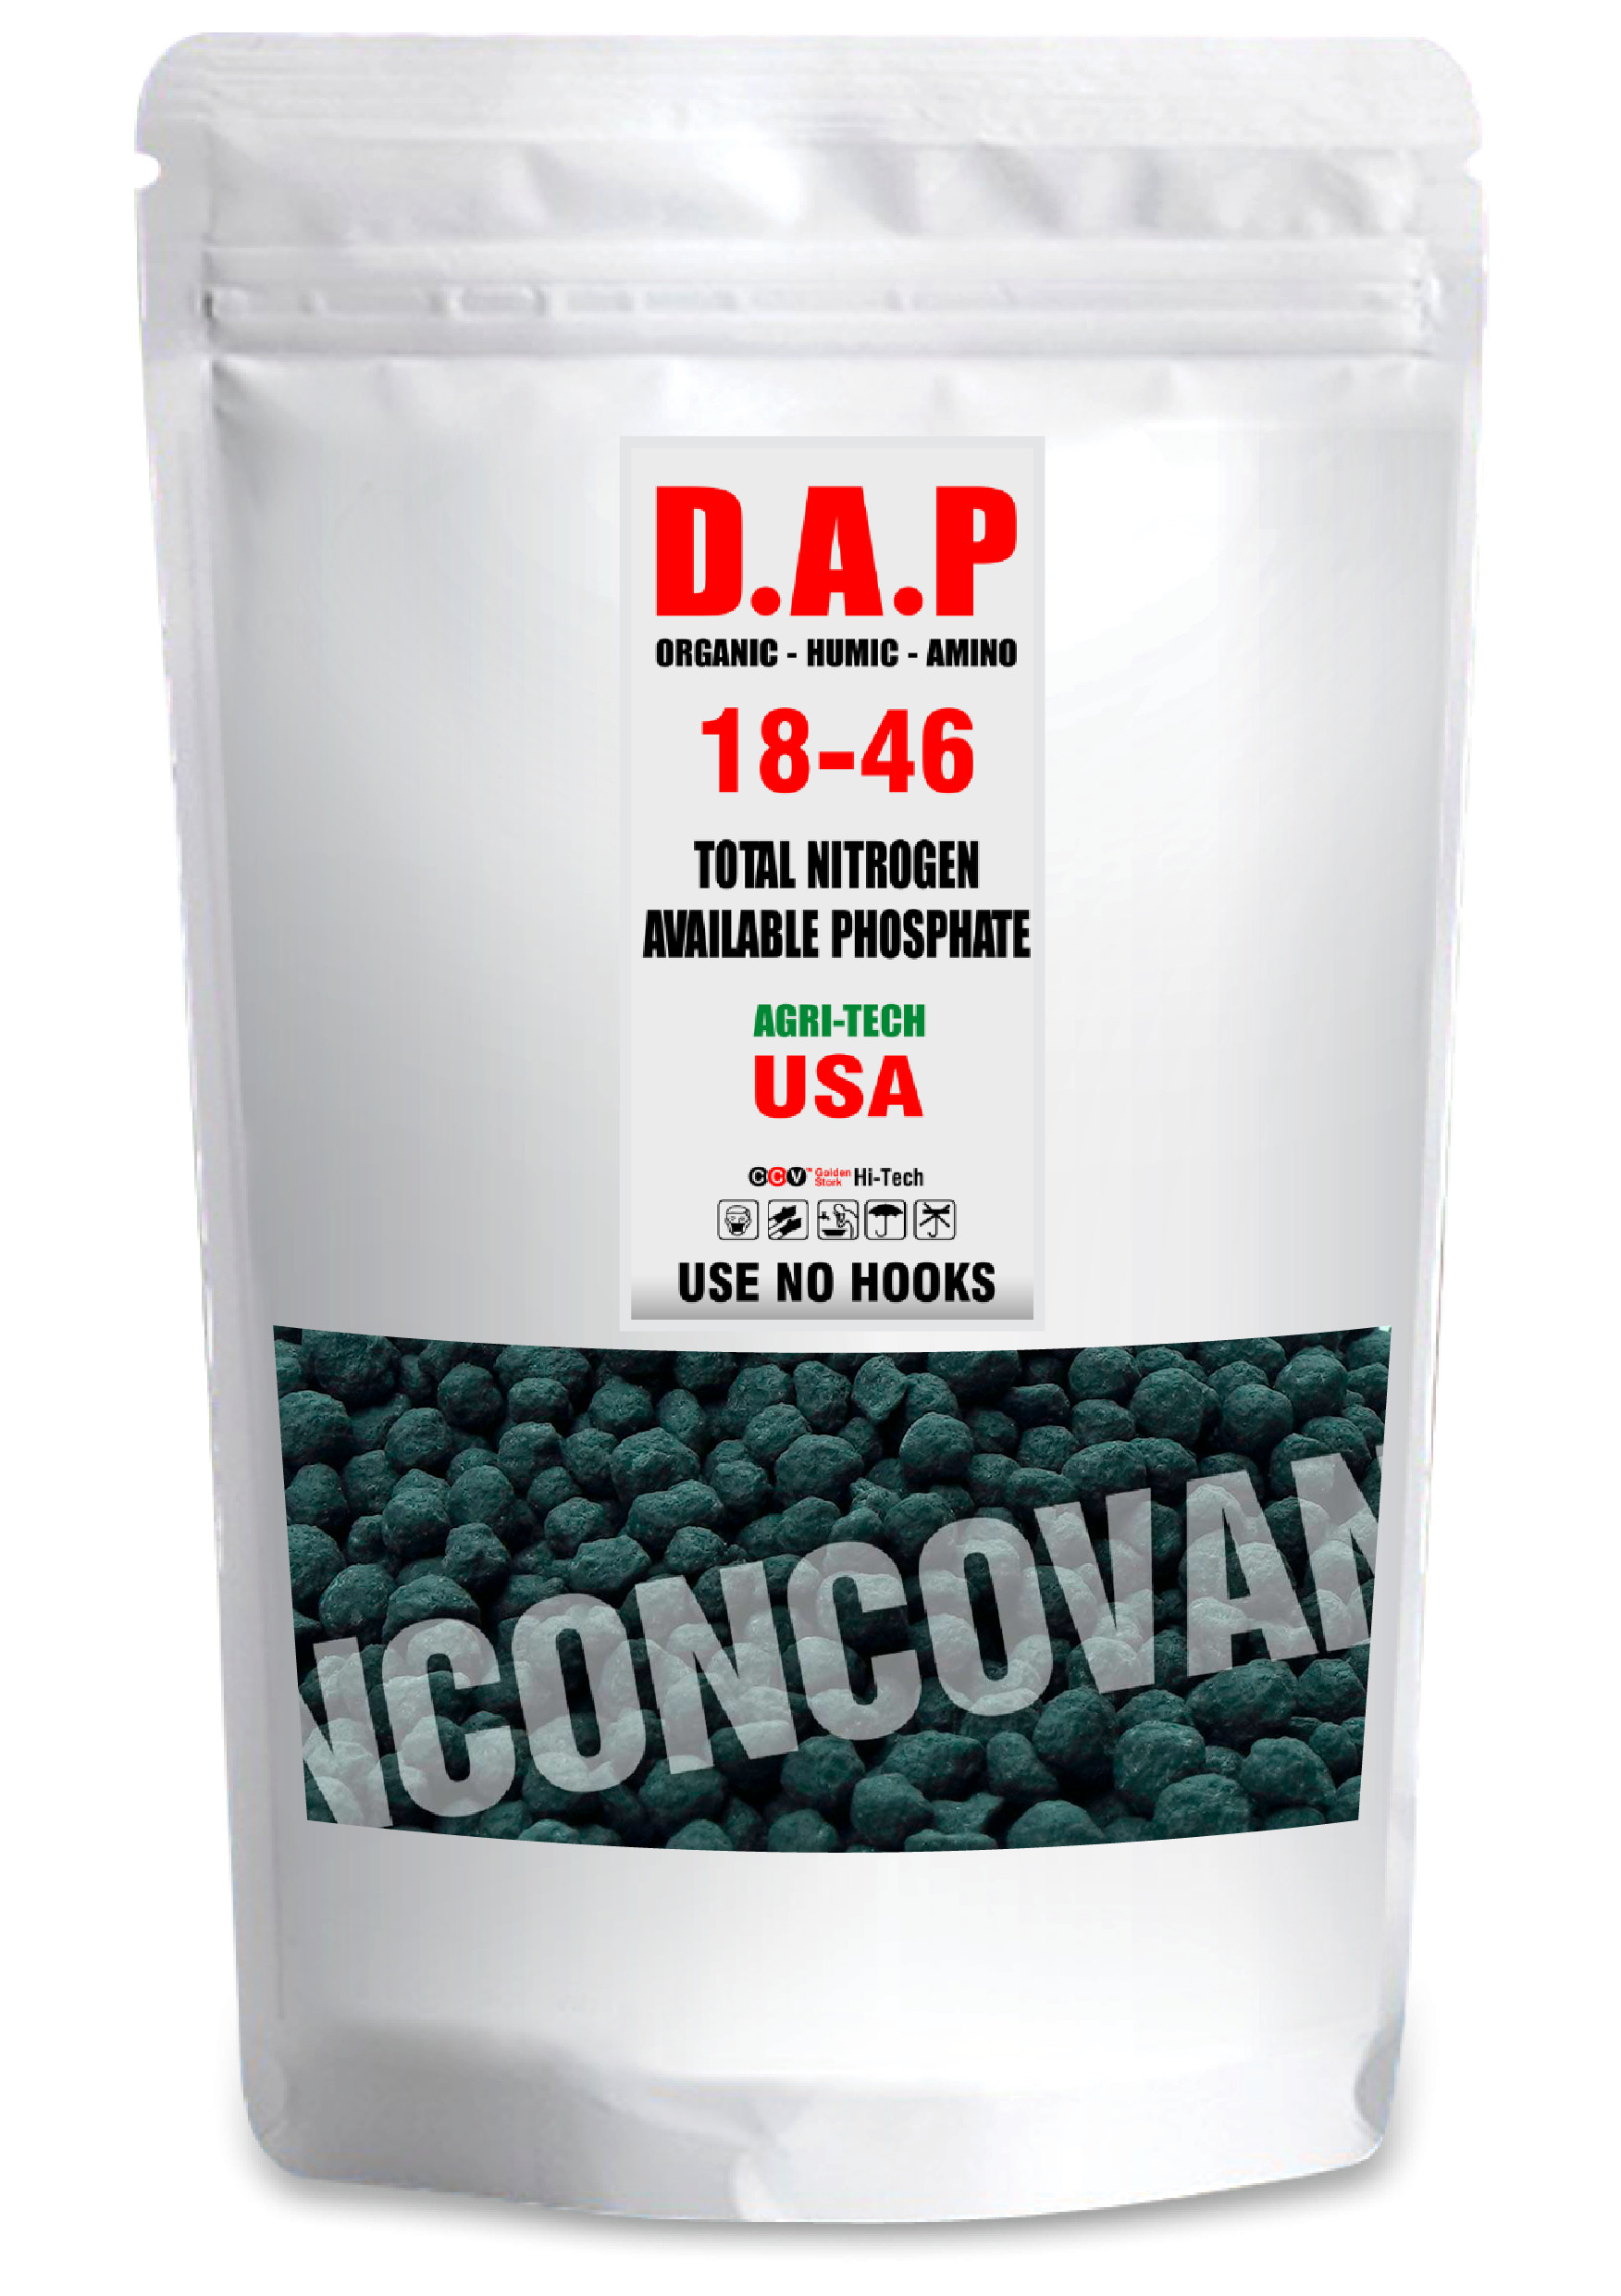 Phân bón nhập khẩu : DAP organic-humic-amino 18-46 usa